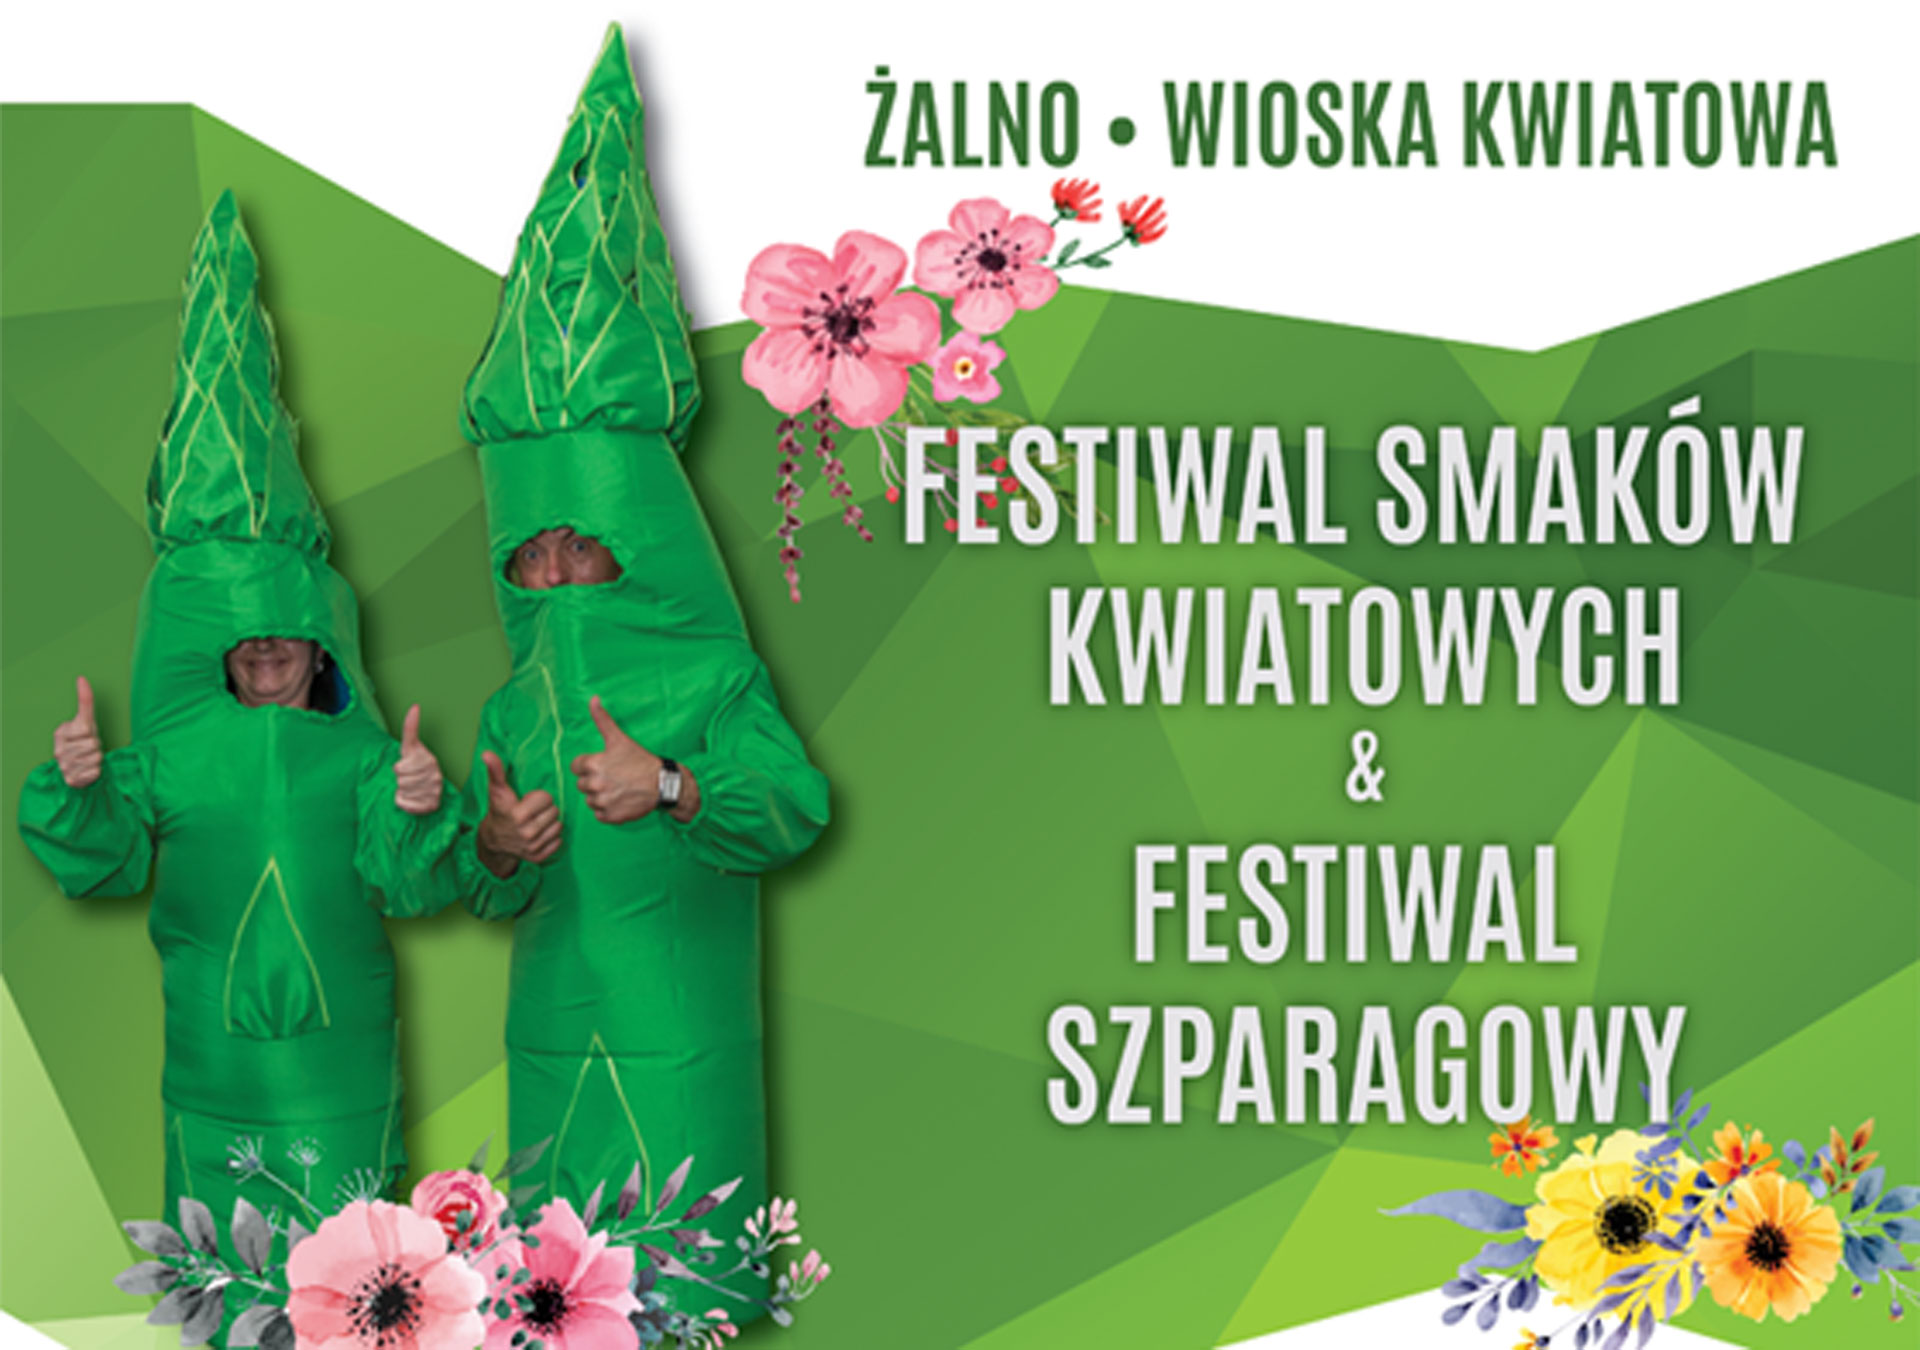 Festiwal smaków kwiatowych oraz szparagowych 